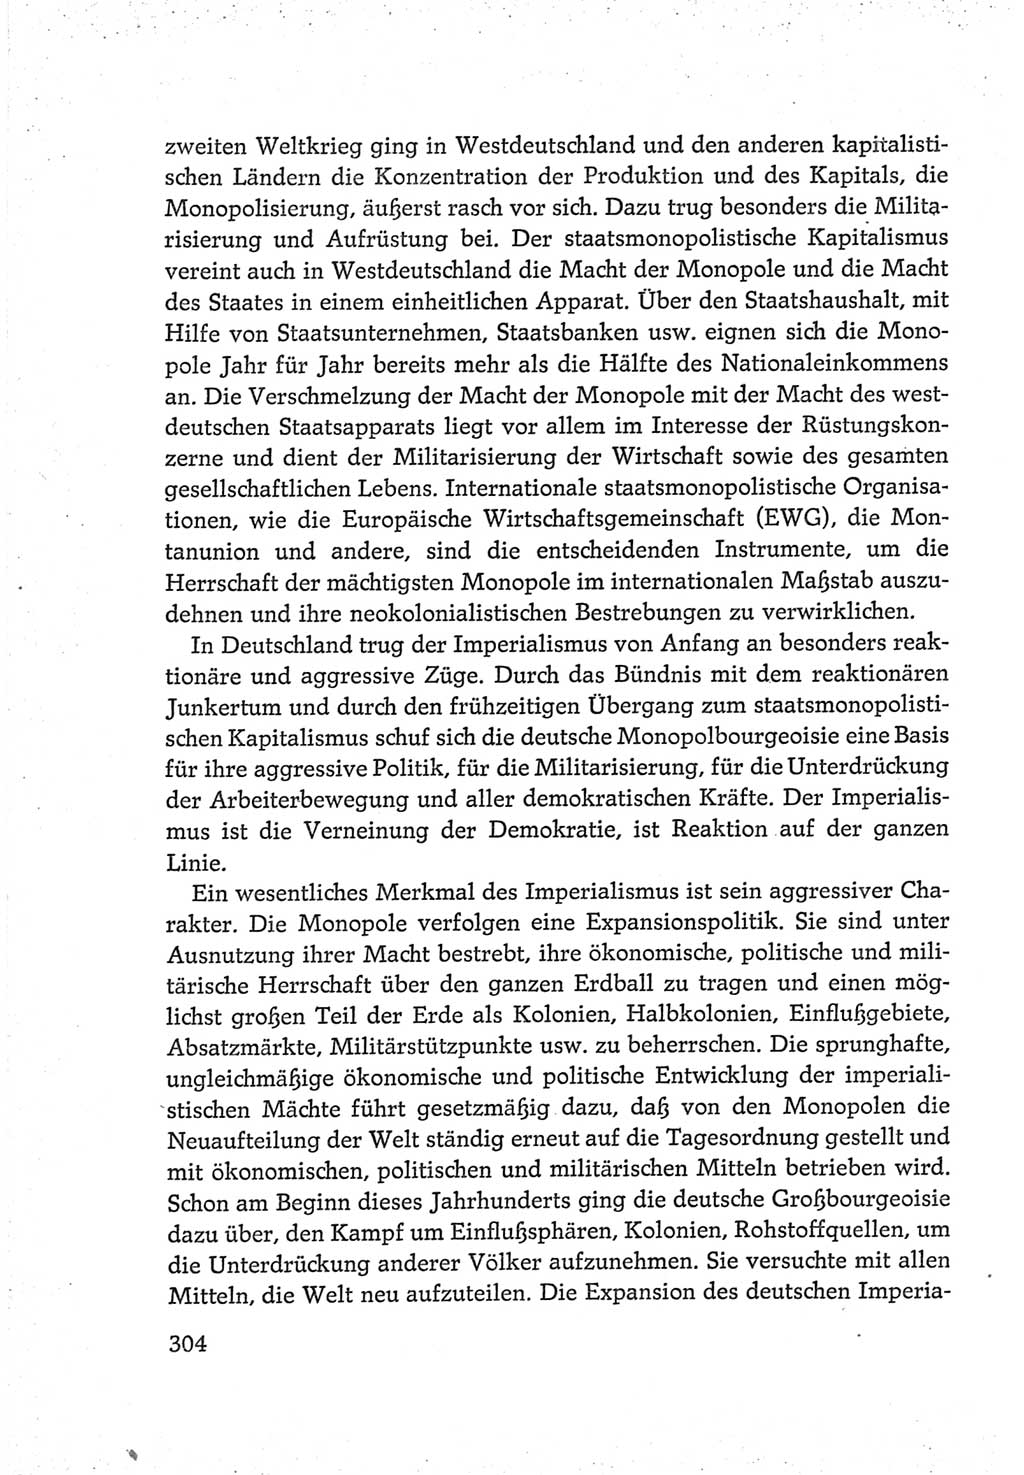 Protokoll der Verhandlungen des Ⅵ. Parteitages der Sozialistischen Einheitspartei Deutschlands (SED) [Deutsche Demokratische Republik (DDR)] 1963, Band Ⅳ, Seite 304 (Prot. Verh. Ⅵ. PT SED DDR 1963, Bd. Ⅳ, S. 304)